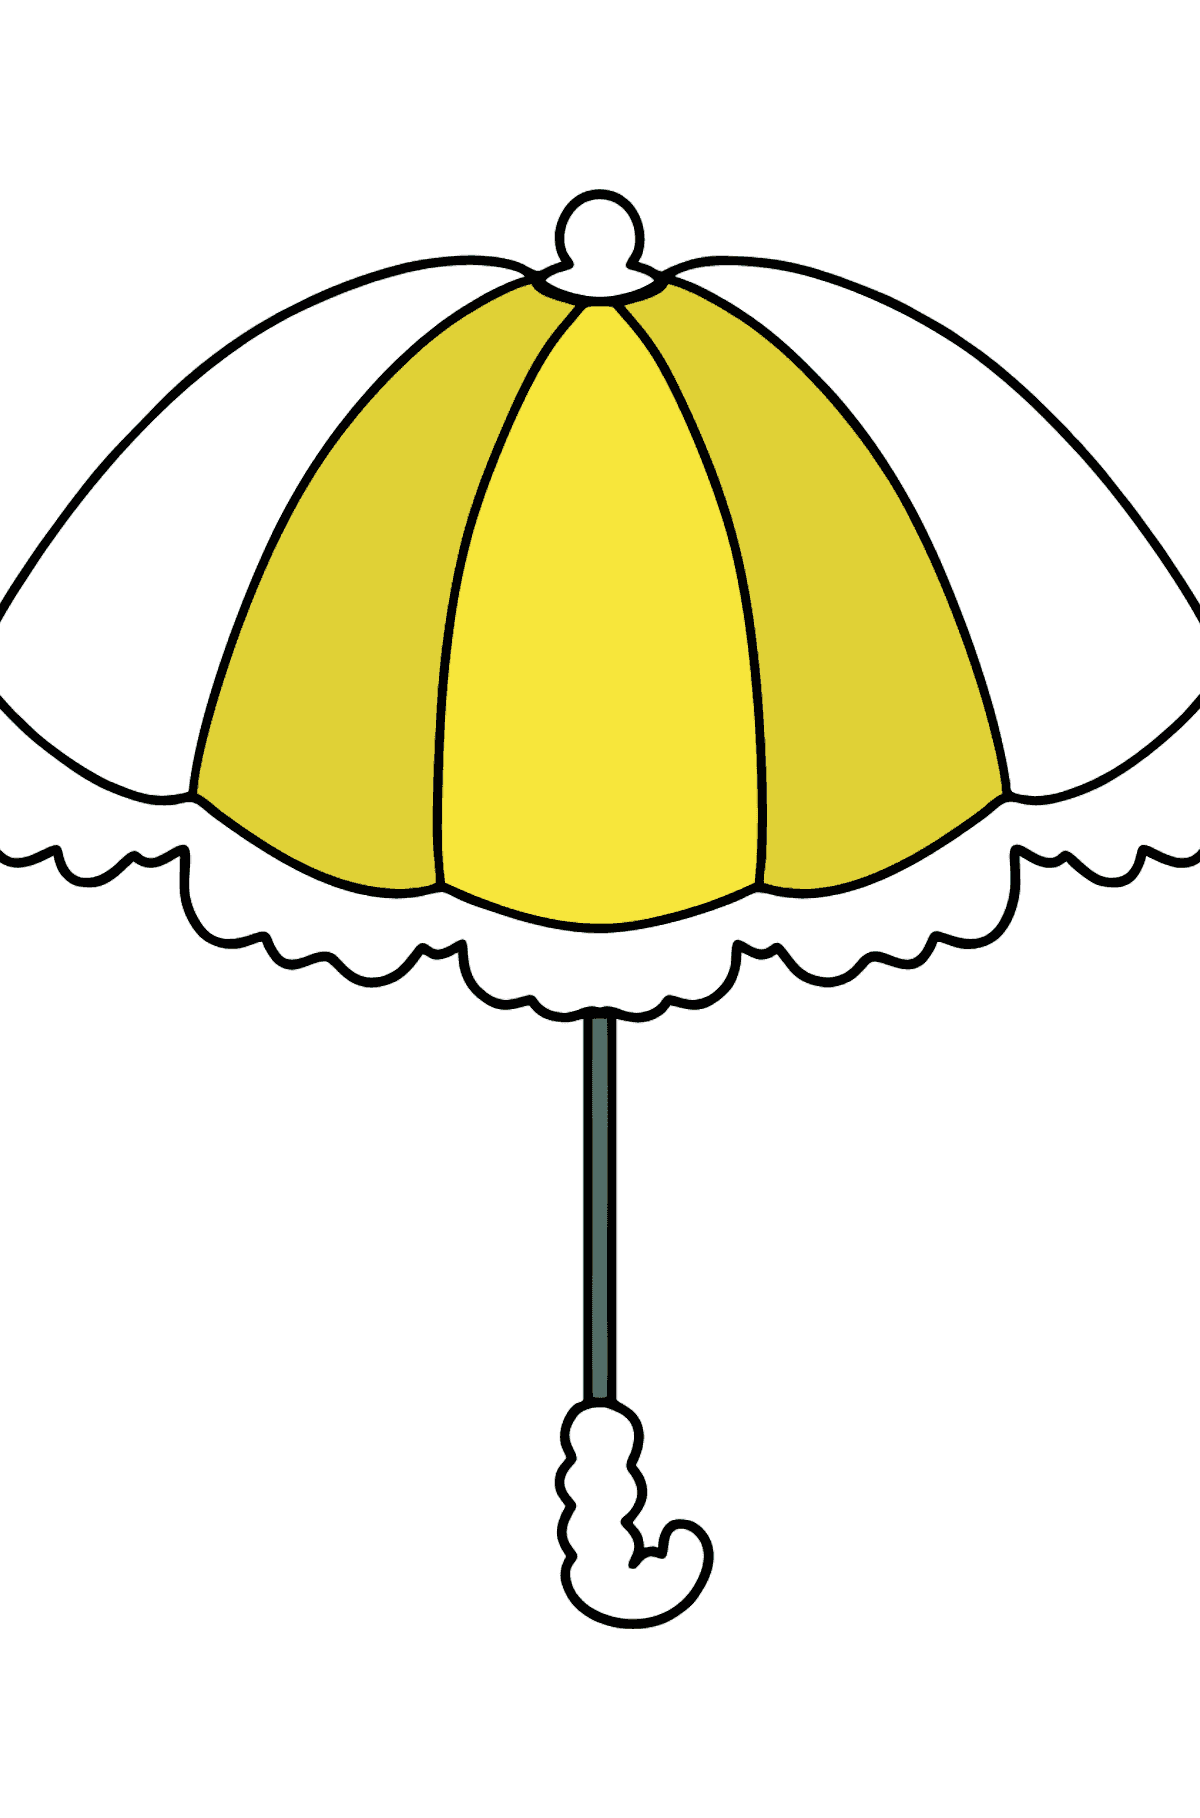 Semplice pagina da colorare - un ombrello - Disegni da colorare per bambini